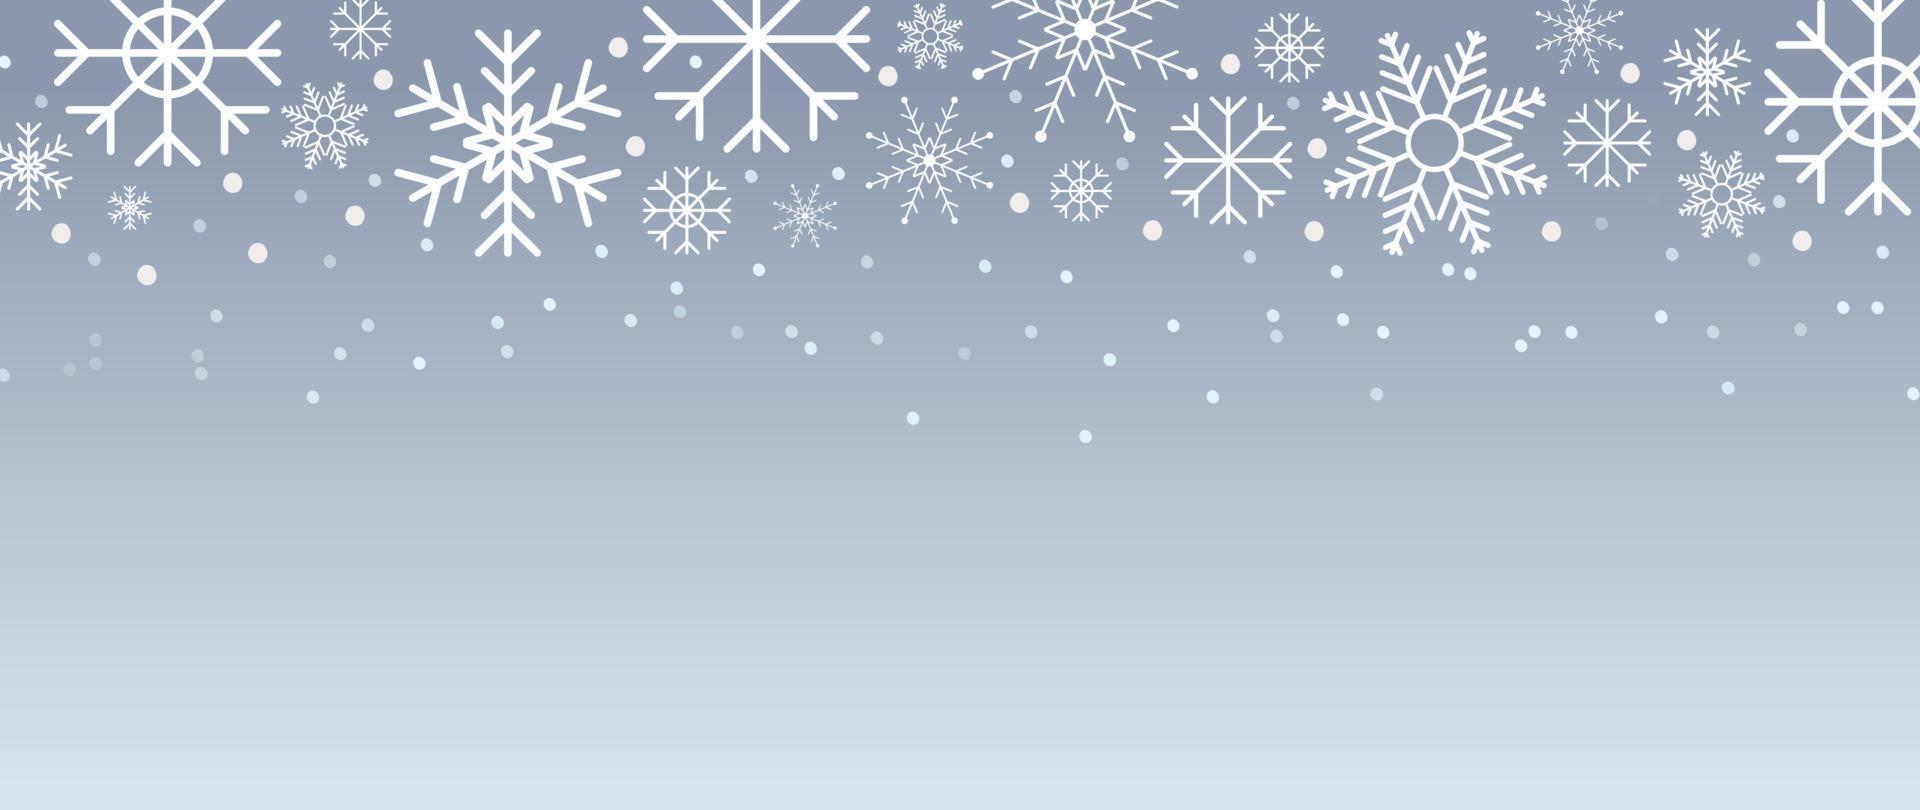 Ilustración de vector de fondo de copo de nieve de invierno elegante. copo de nieve decorativo de lujo y nevadas sobre fondo gris degradado. diseño adecuado para tarjeta de invitación, saludo, papel tapiz, afiche, pancarta.